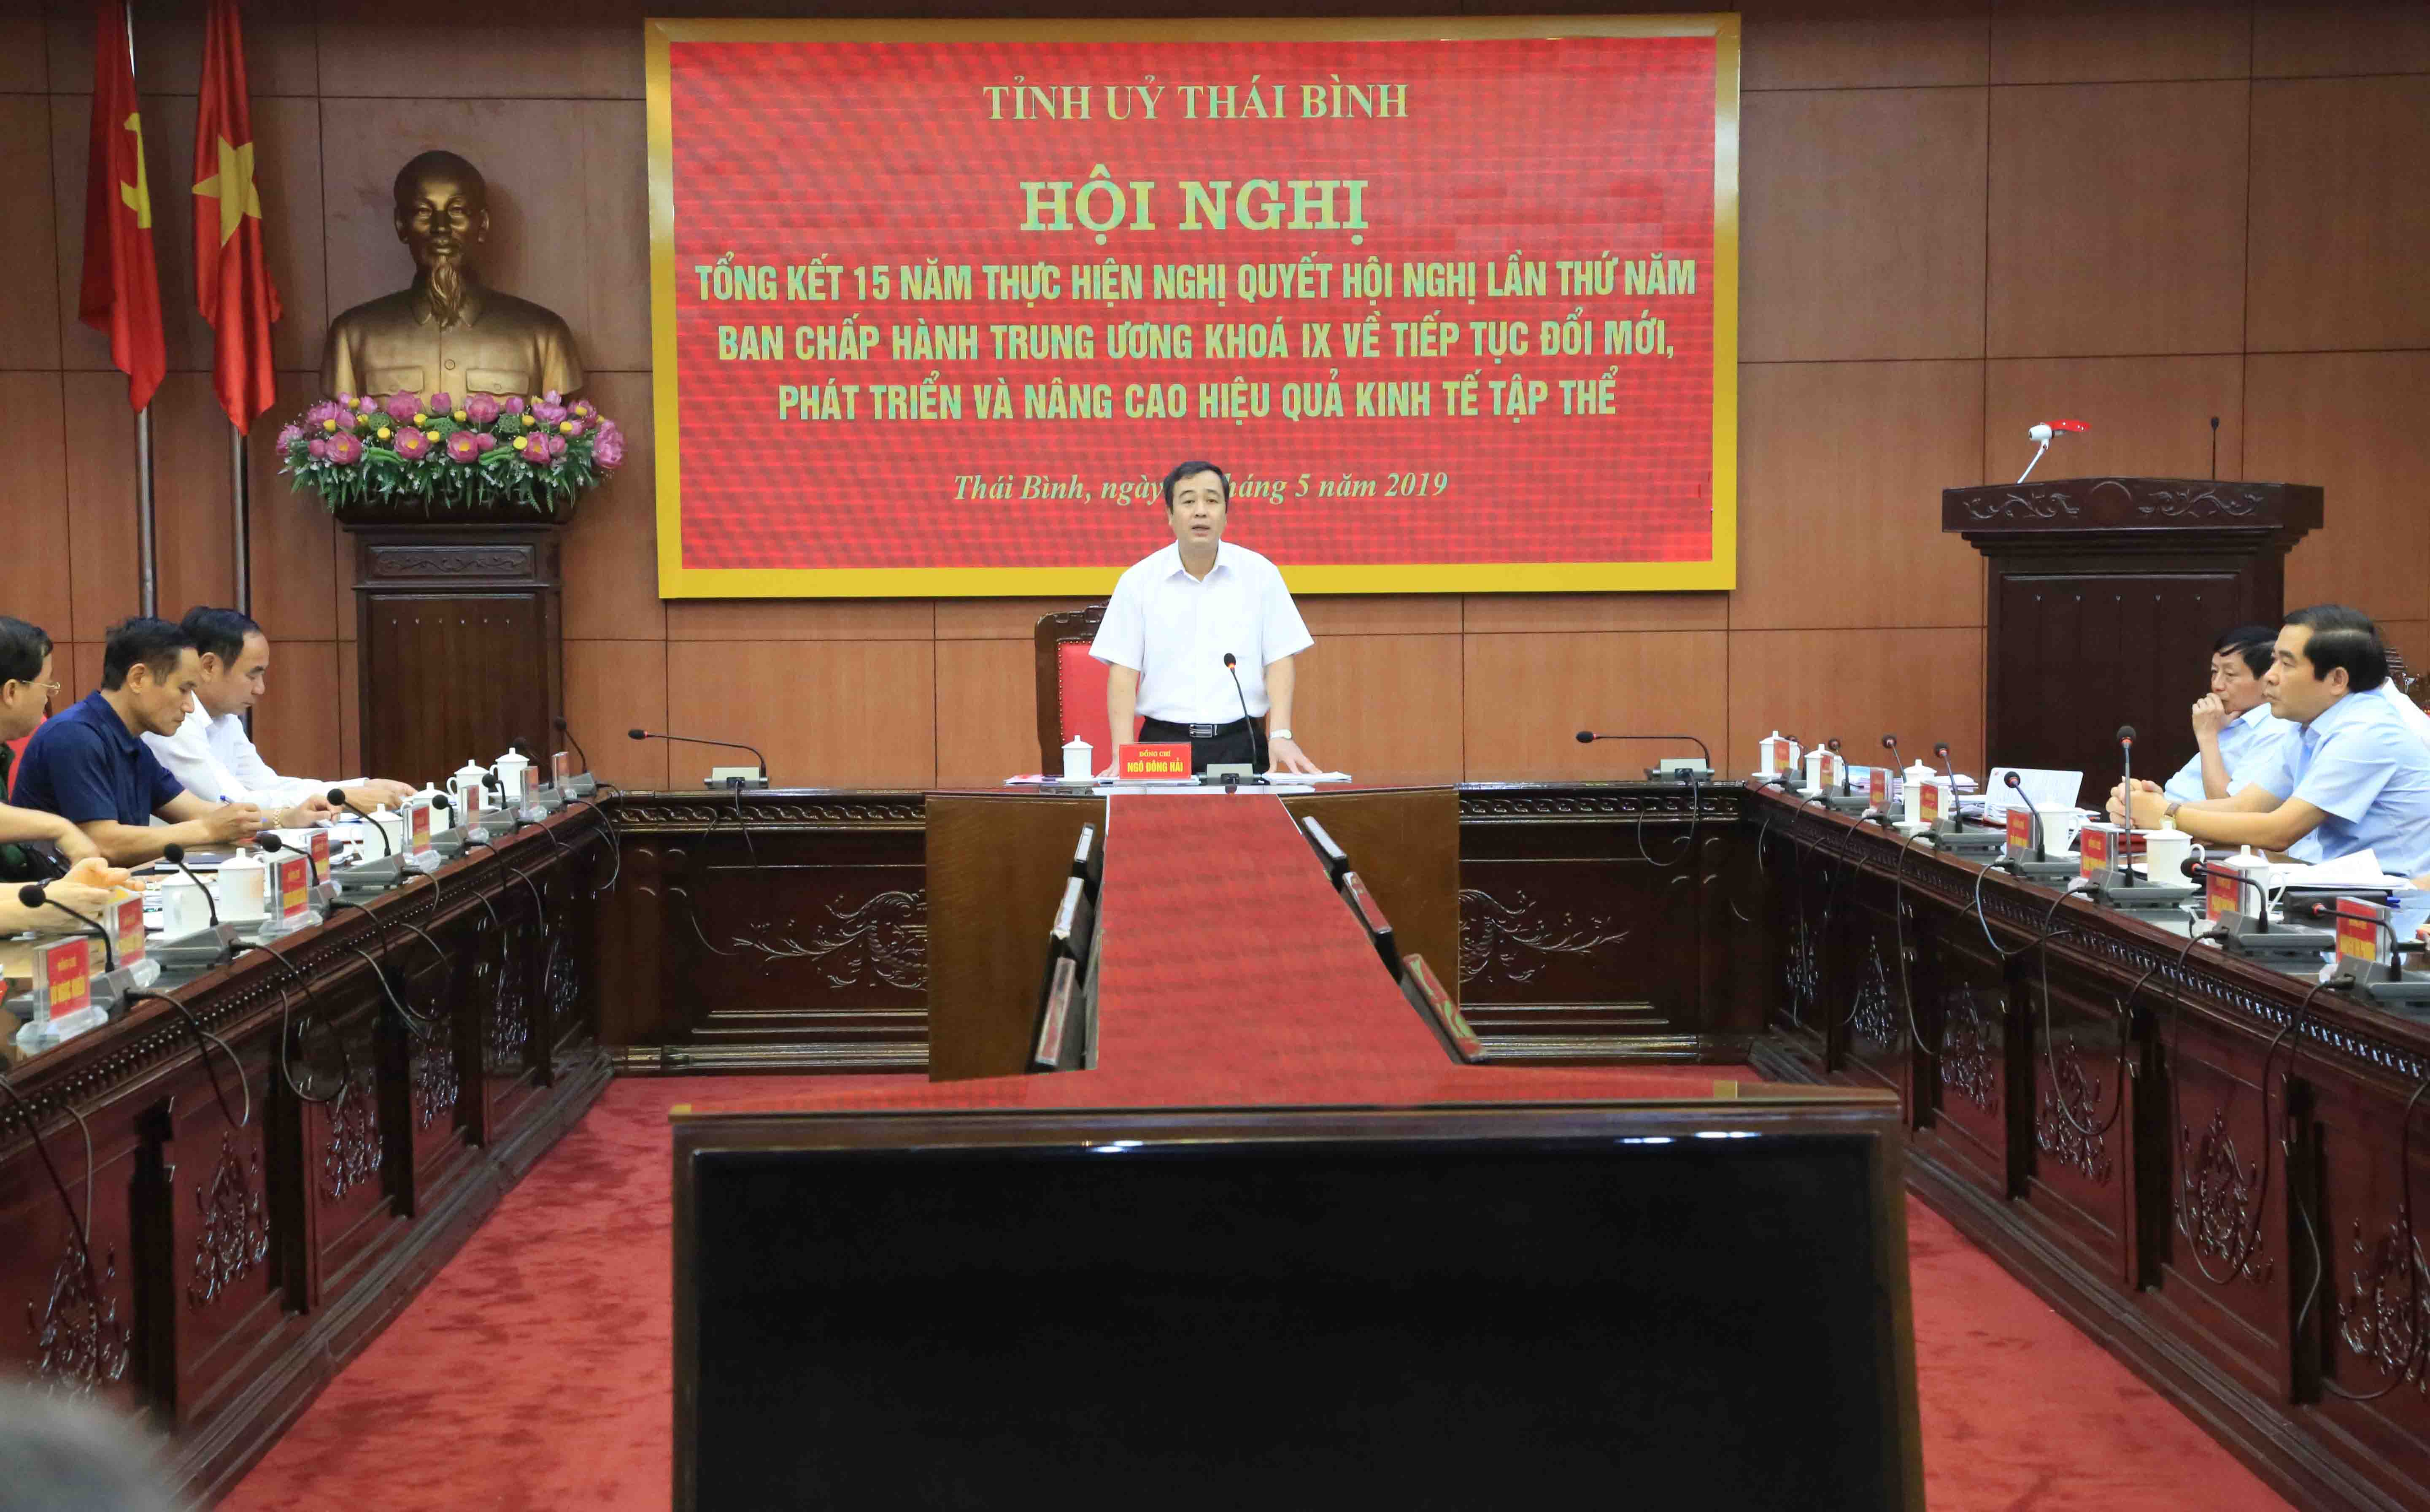 Đồng chí Ngô Đông Hải - Ủy viên dự khuyết TW Đảng, Phó Bí thư thường trực tỉnh ủy phát biểu tại Hội nghị TK 15 năm thực hiện NQ TW 5 khóa IX